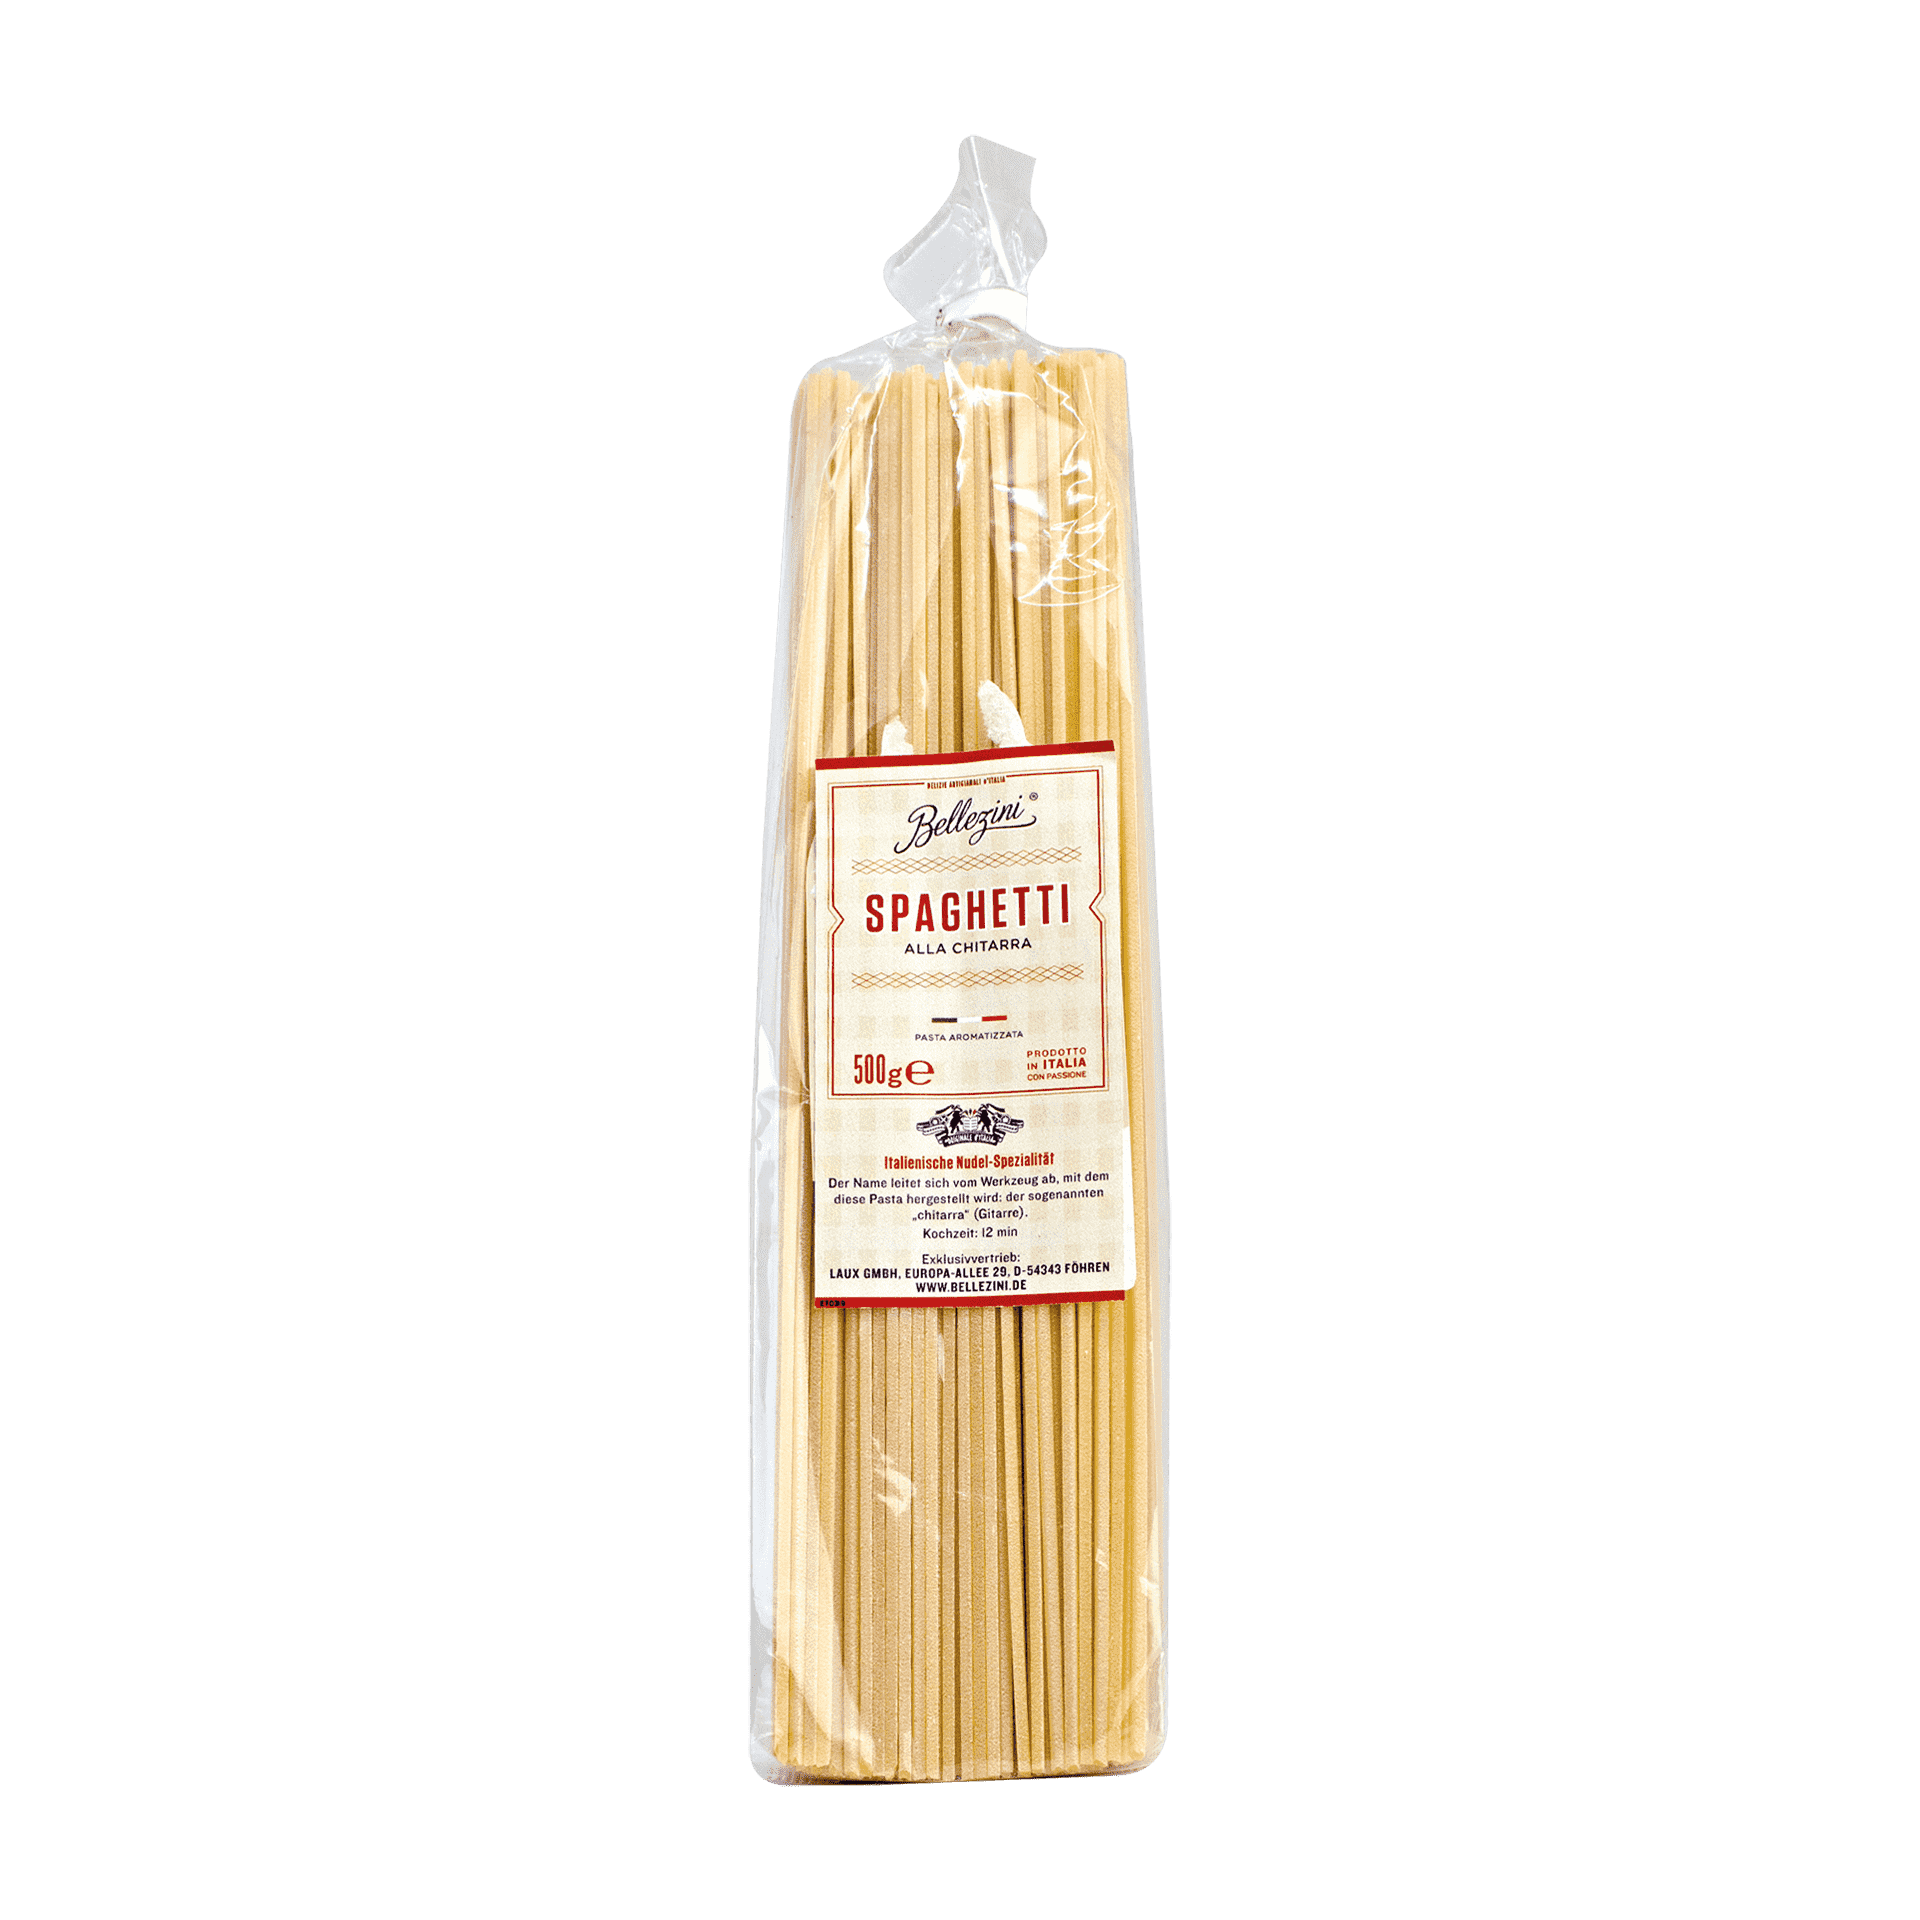 Spaghetti alla Chitarra - Original italienische Pasta